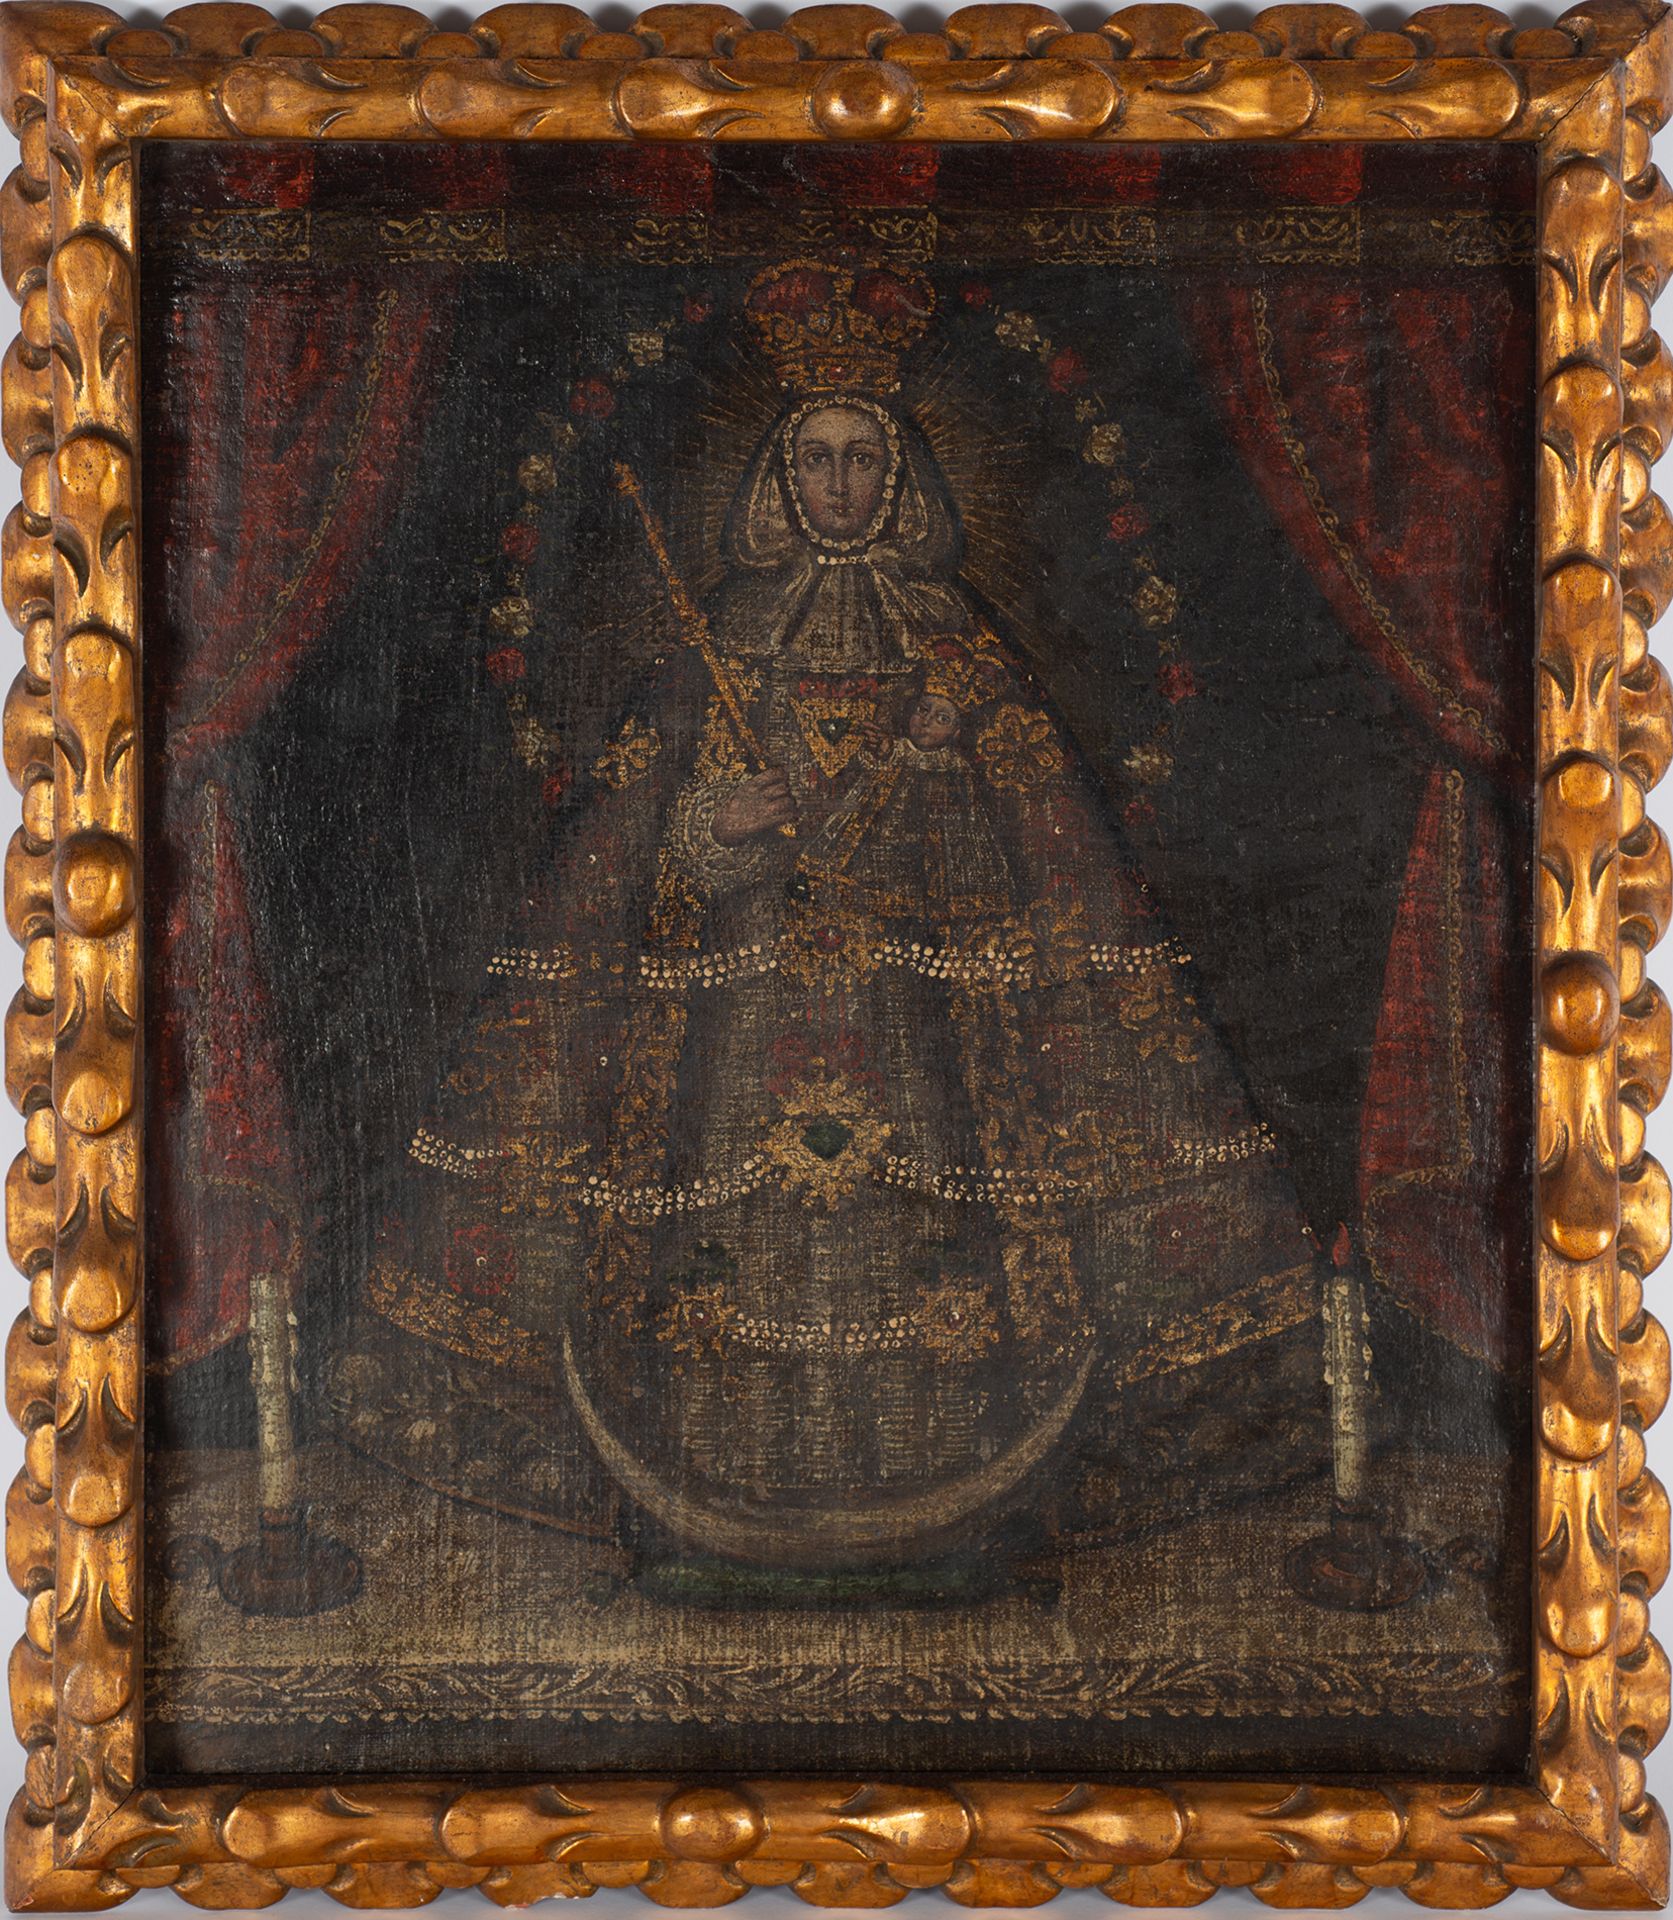 Virgen de la Candelaria, Cuzco colonial school from the 17th century